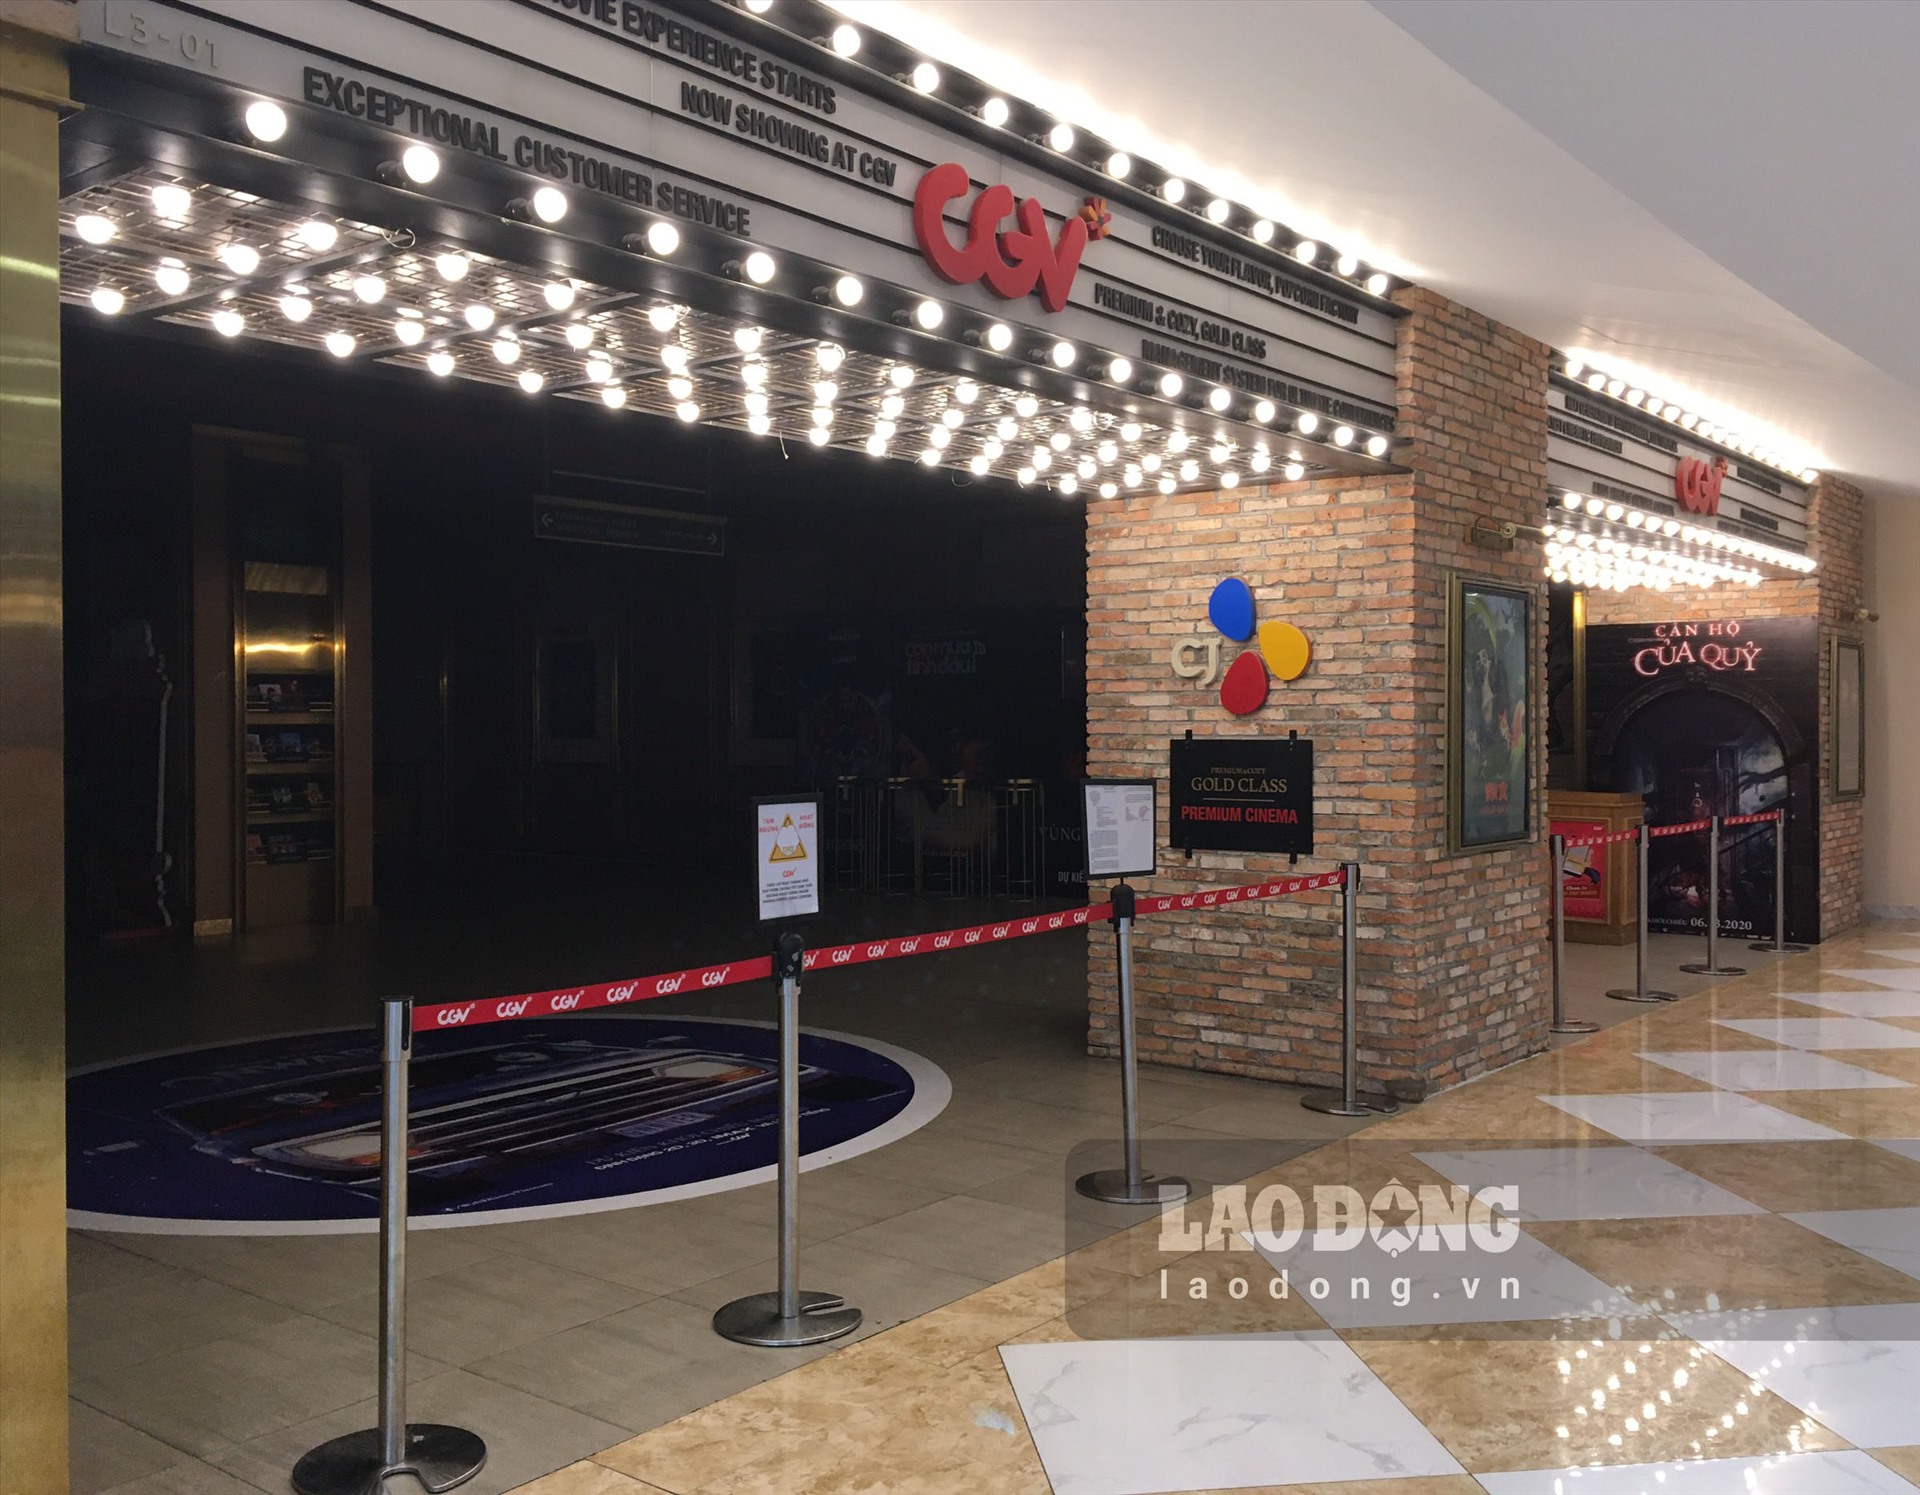 Trong khi đó, một rạp chiếu phim bên trong trung tâm thương mại vẫn đang dán thông báo đóng cửa, chưa hẹn ngày hoạt động trở lại.